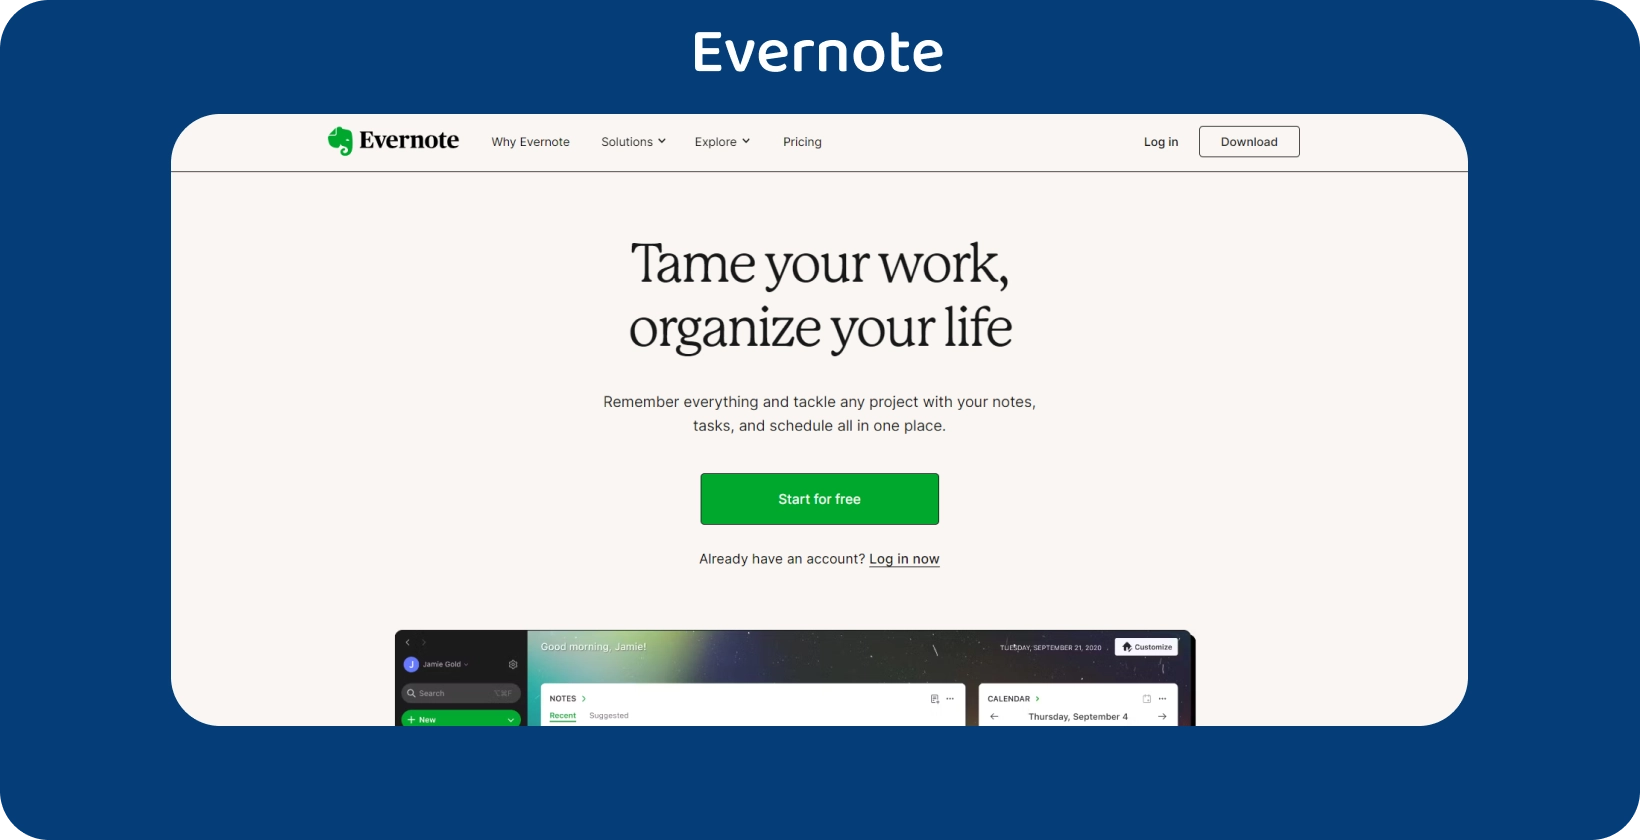 Evernote'nin yapılacaklar listesi içeren not alma ekranı, görev organizasyonunu kolaylaştırır.